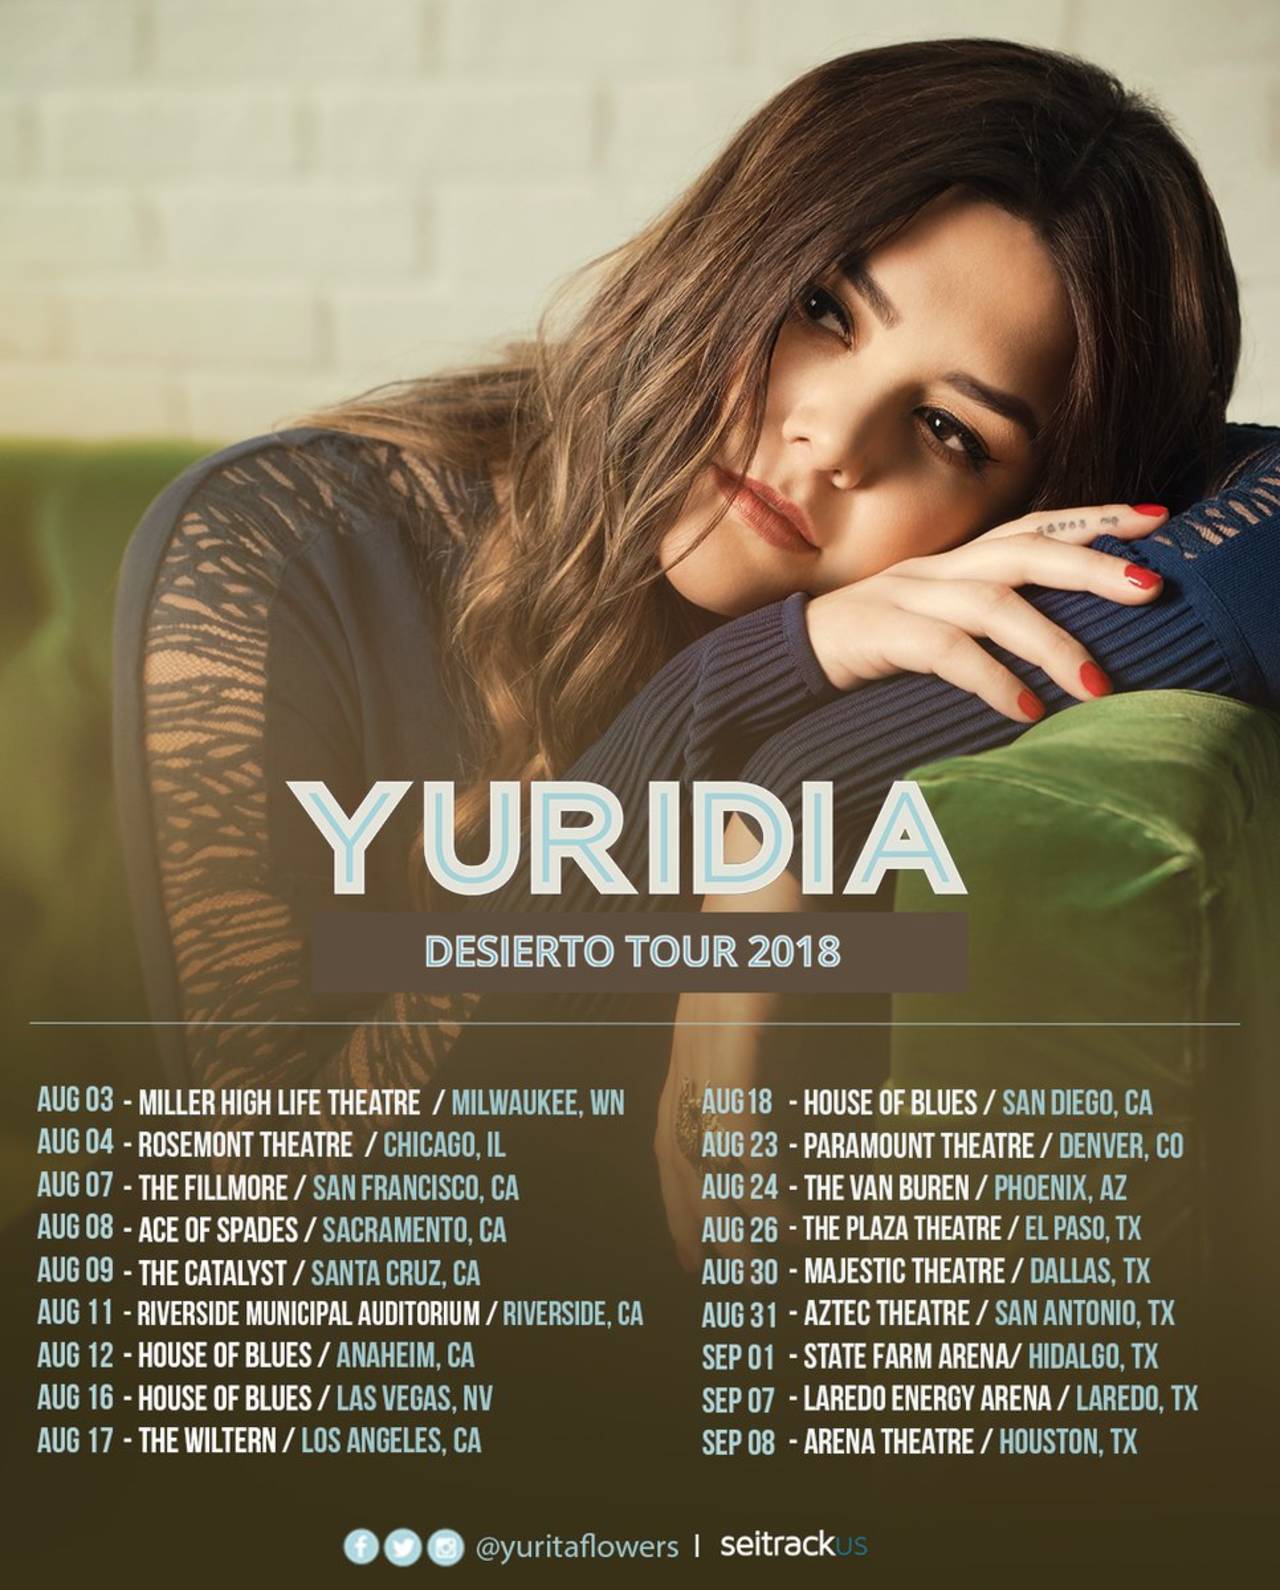 Yuridia traerá a Torreón su gira Desierto